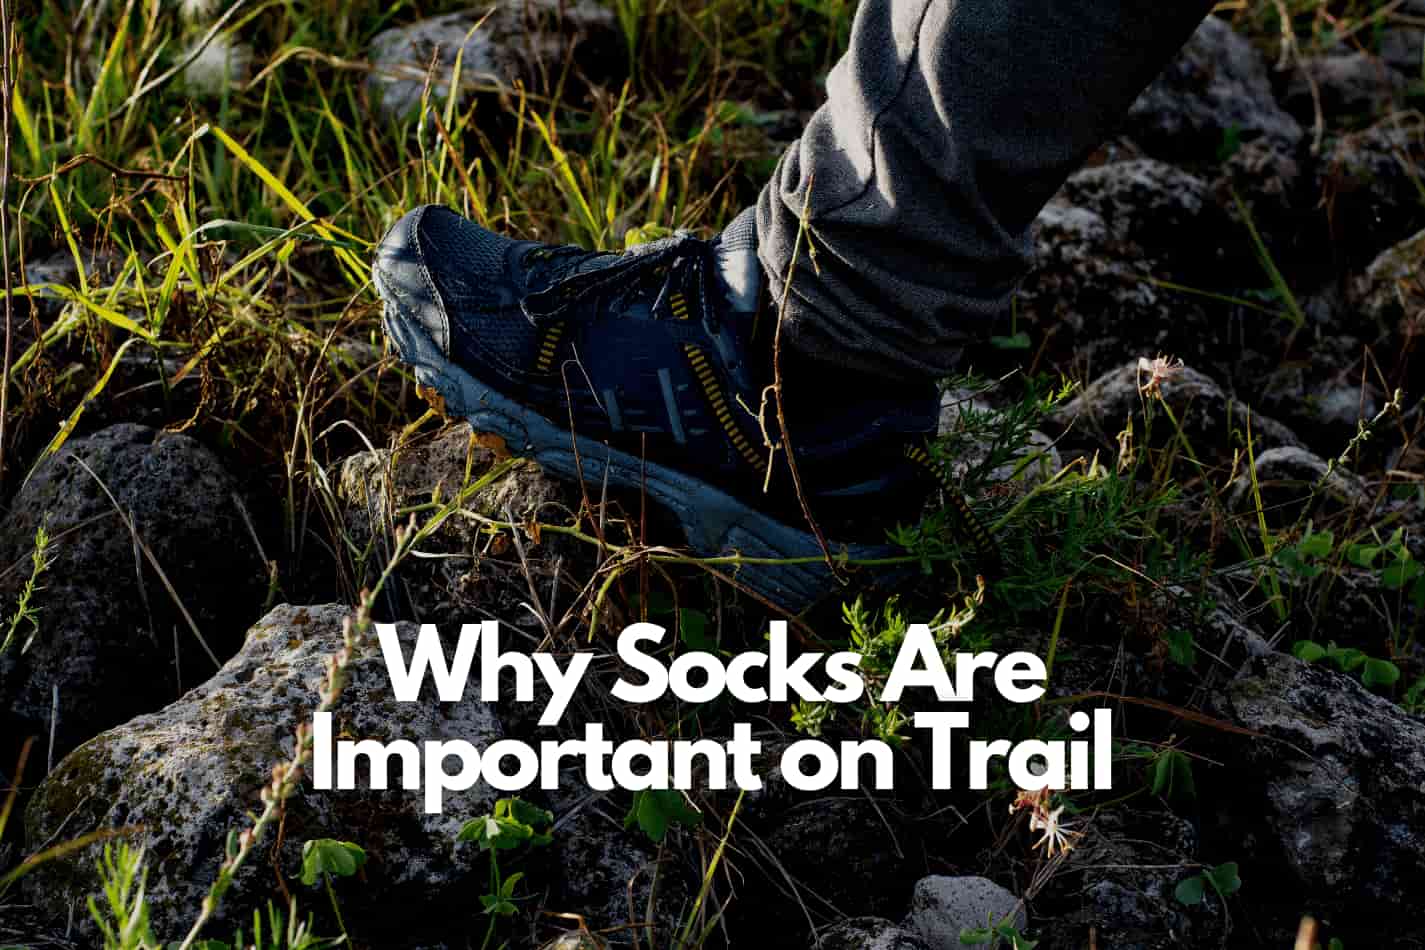 how often to change socks hiking